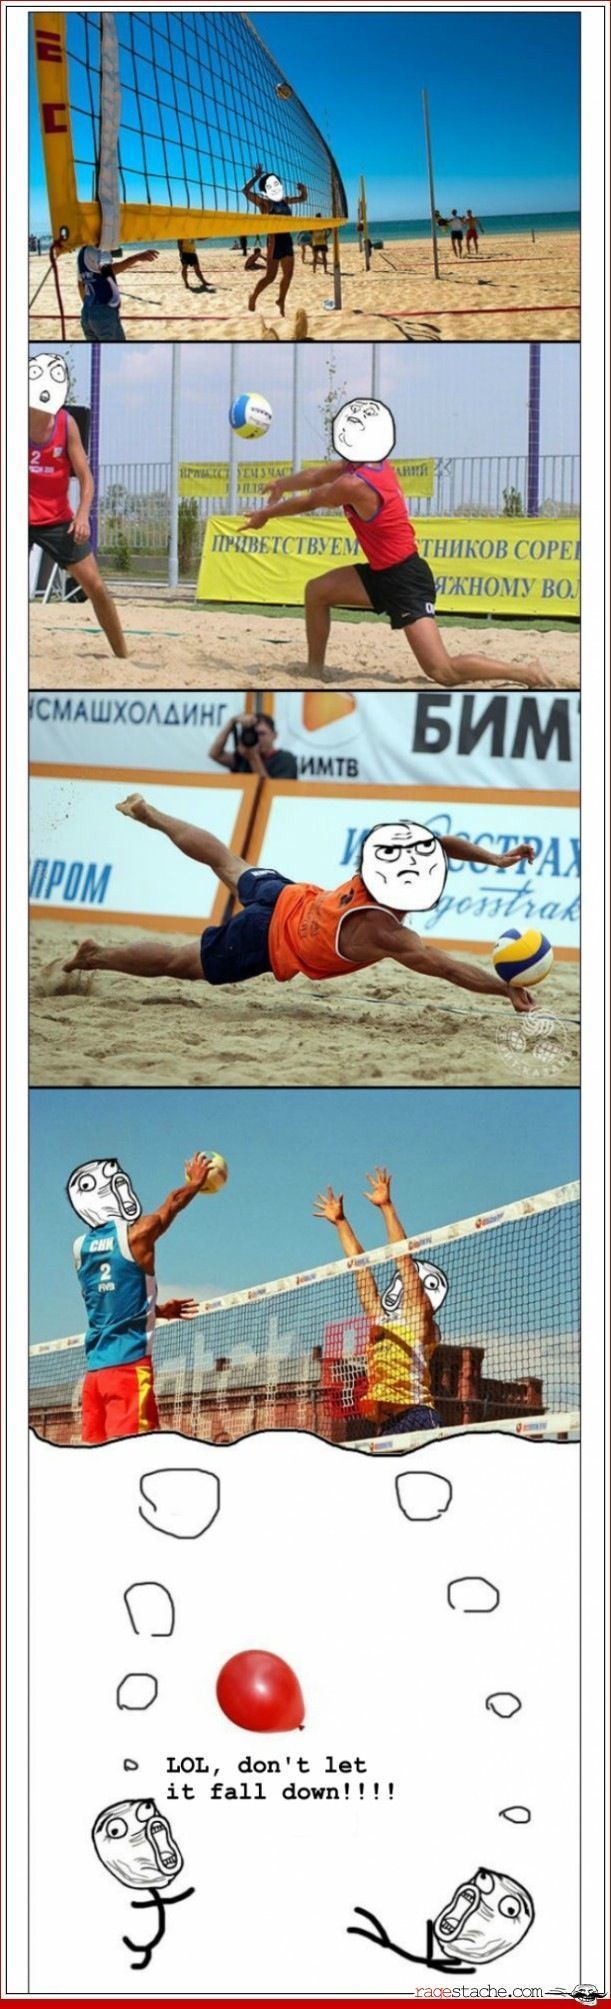 Feel like a volleyballeur - meme